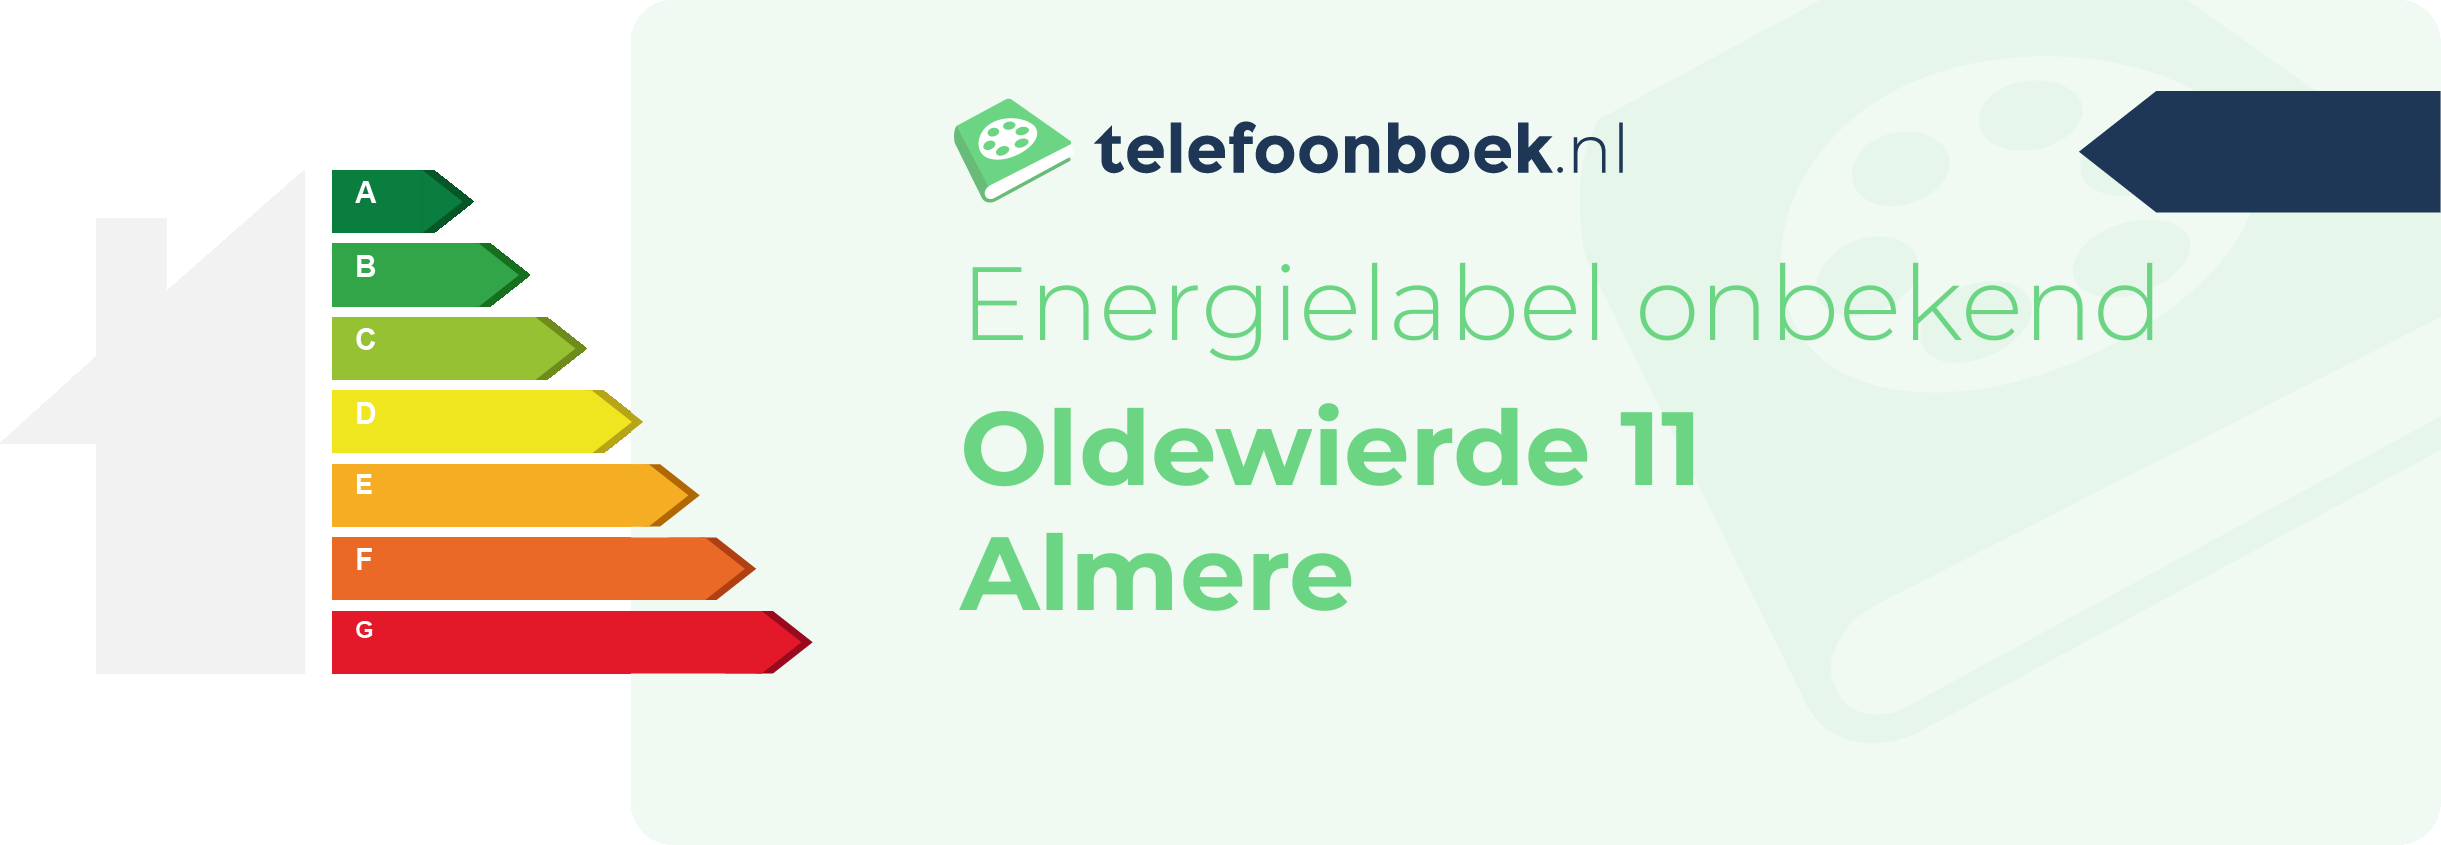 Energielabel Oldewierde 11 Almere